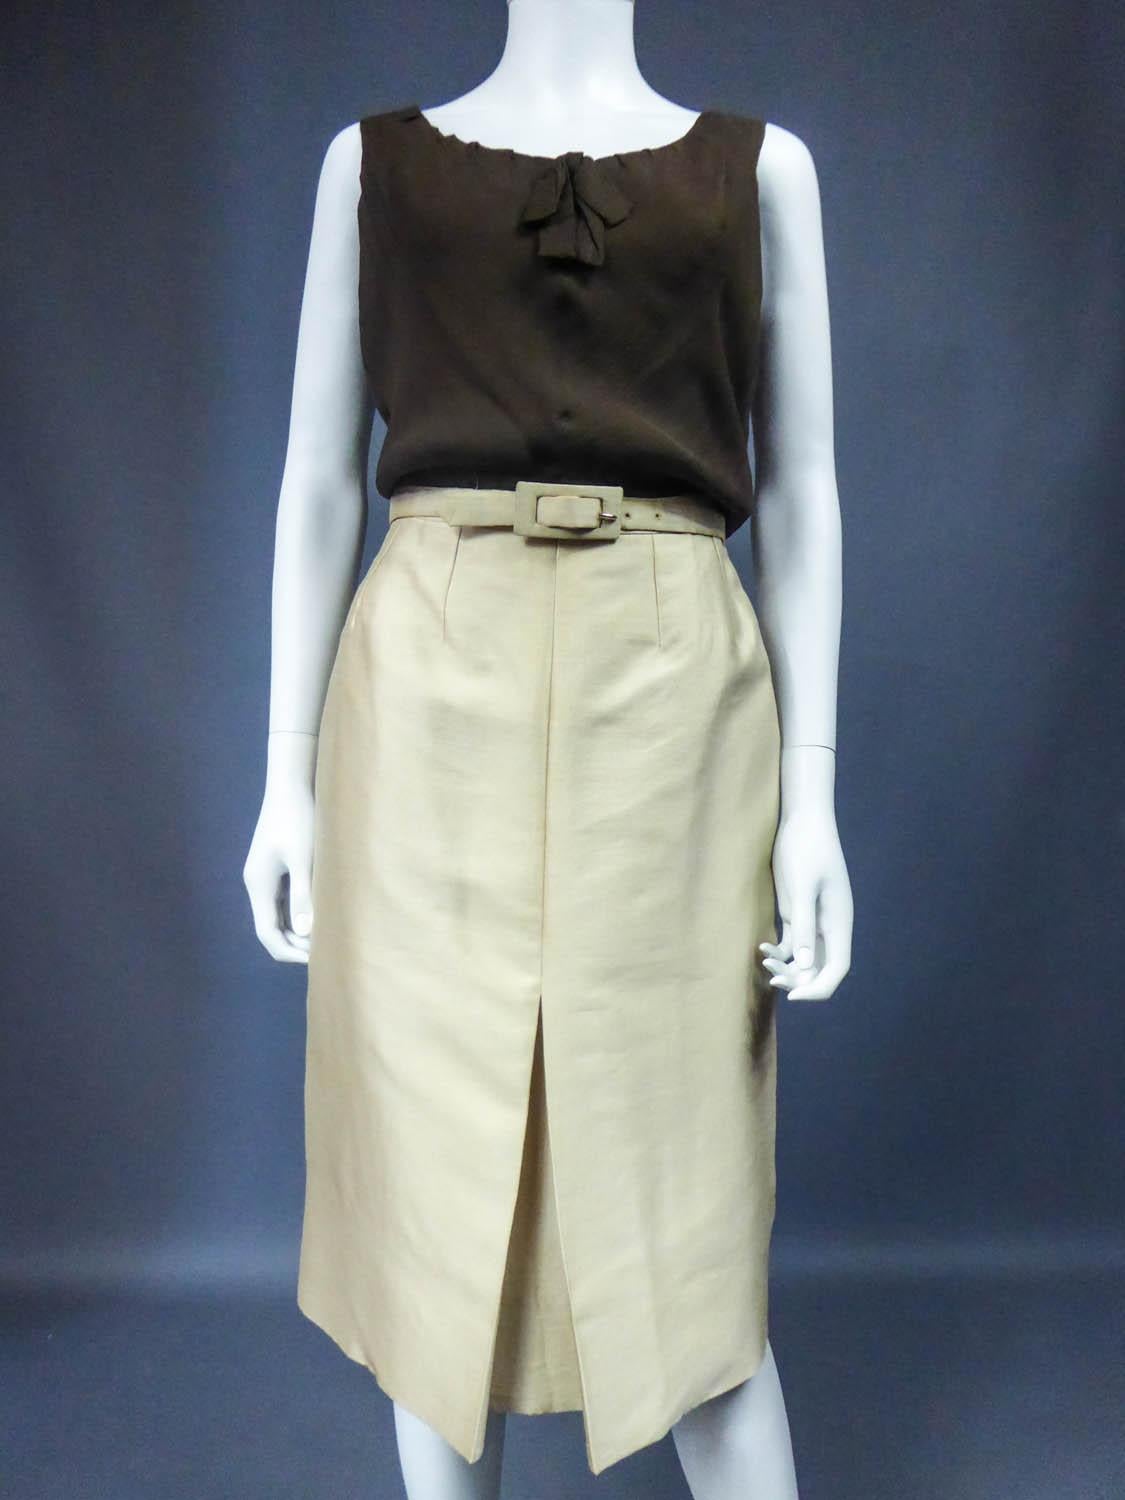 Christian Dior/Marc Bohan Skirt Suit Set numbered 40314 / 41778 Circa 1962 7